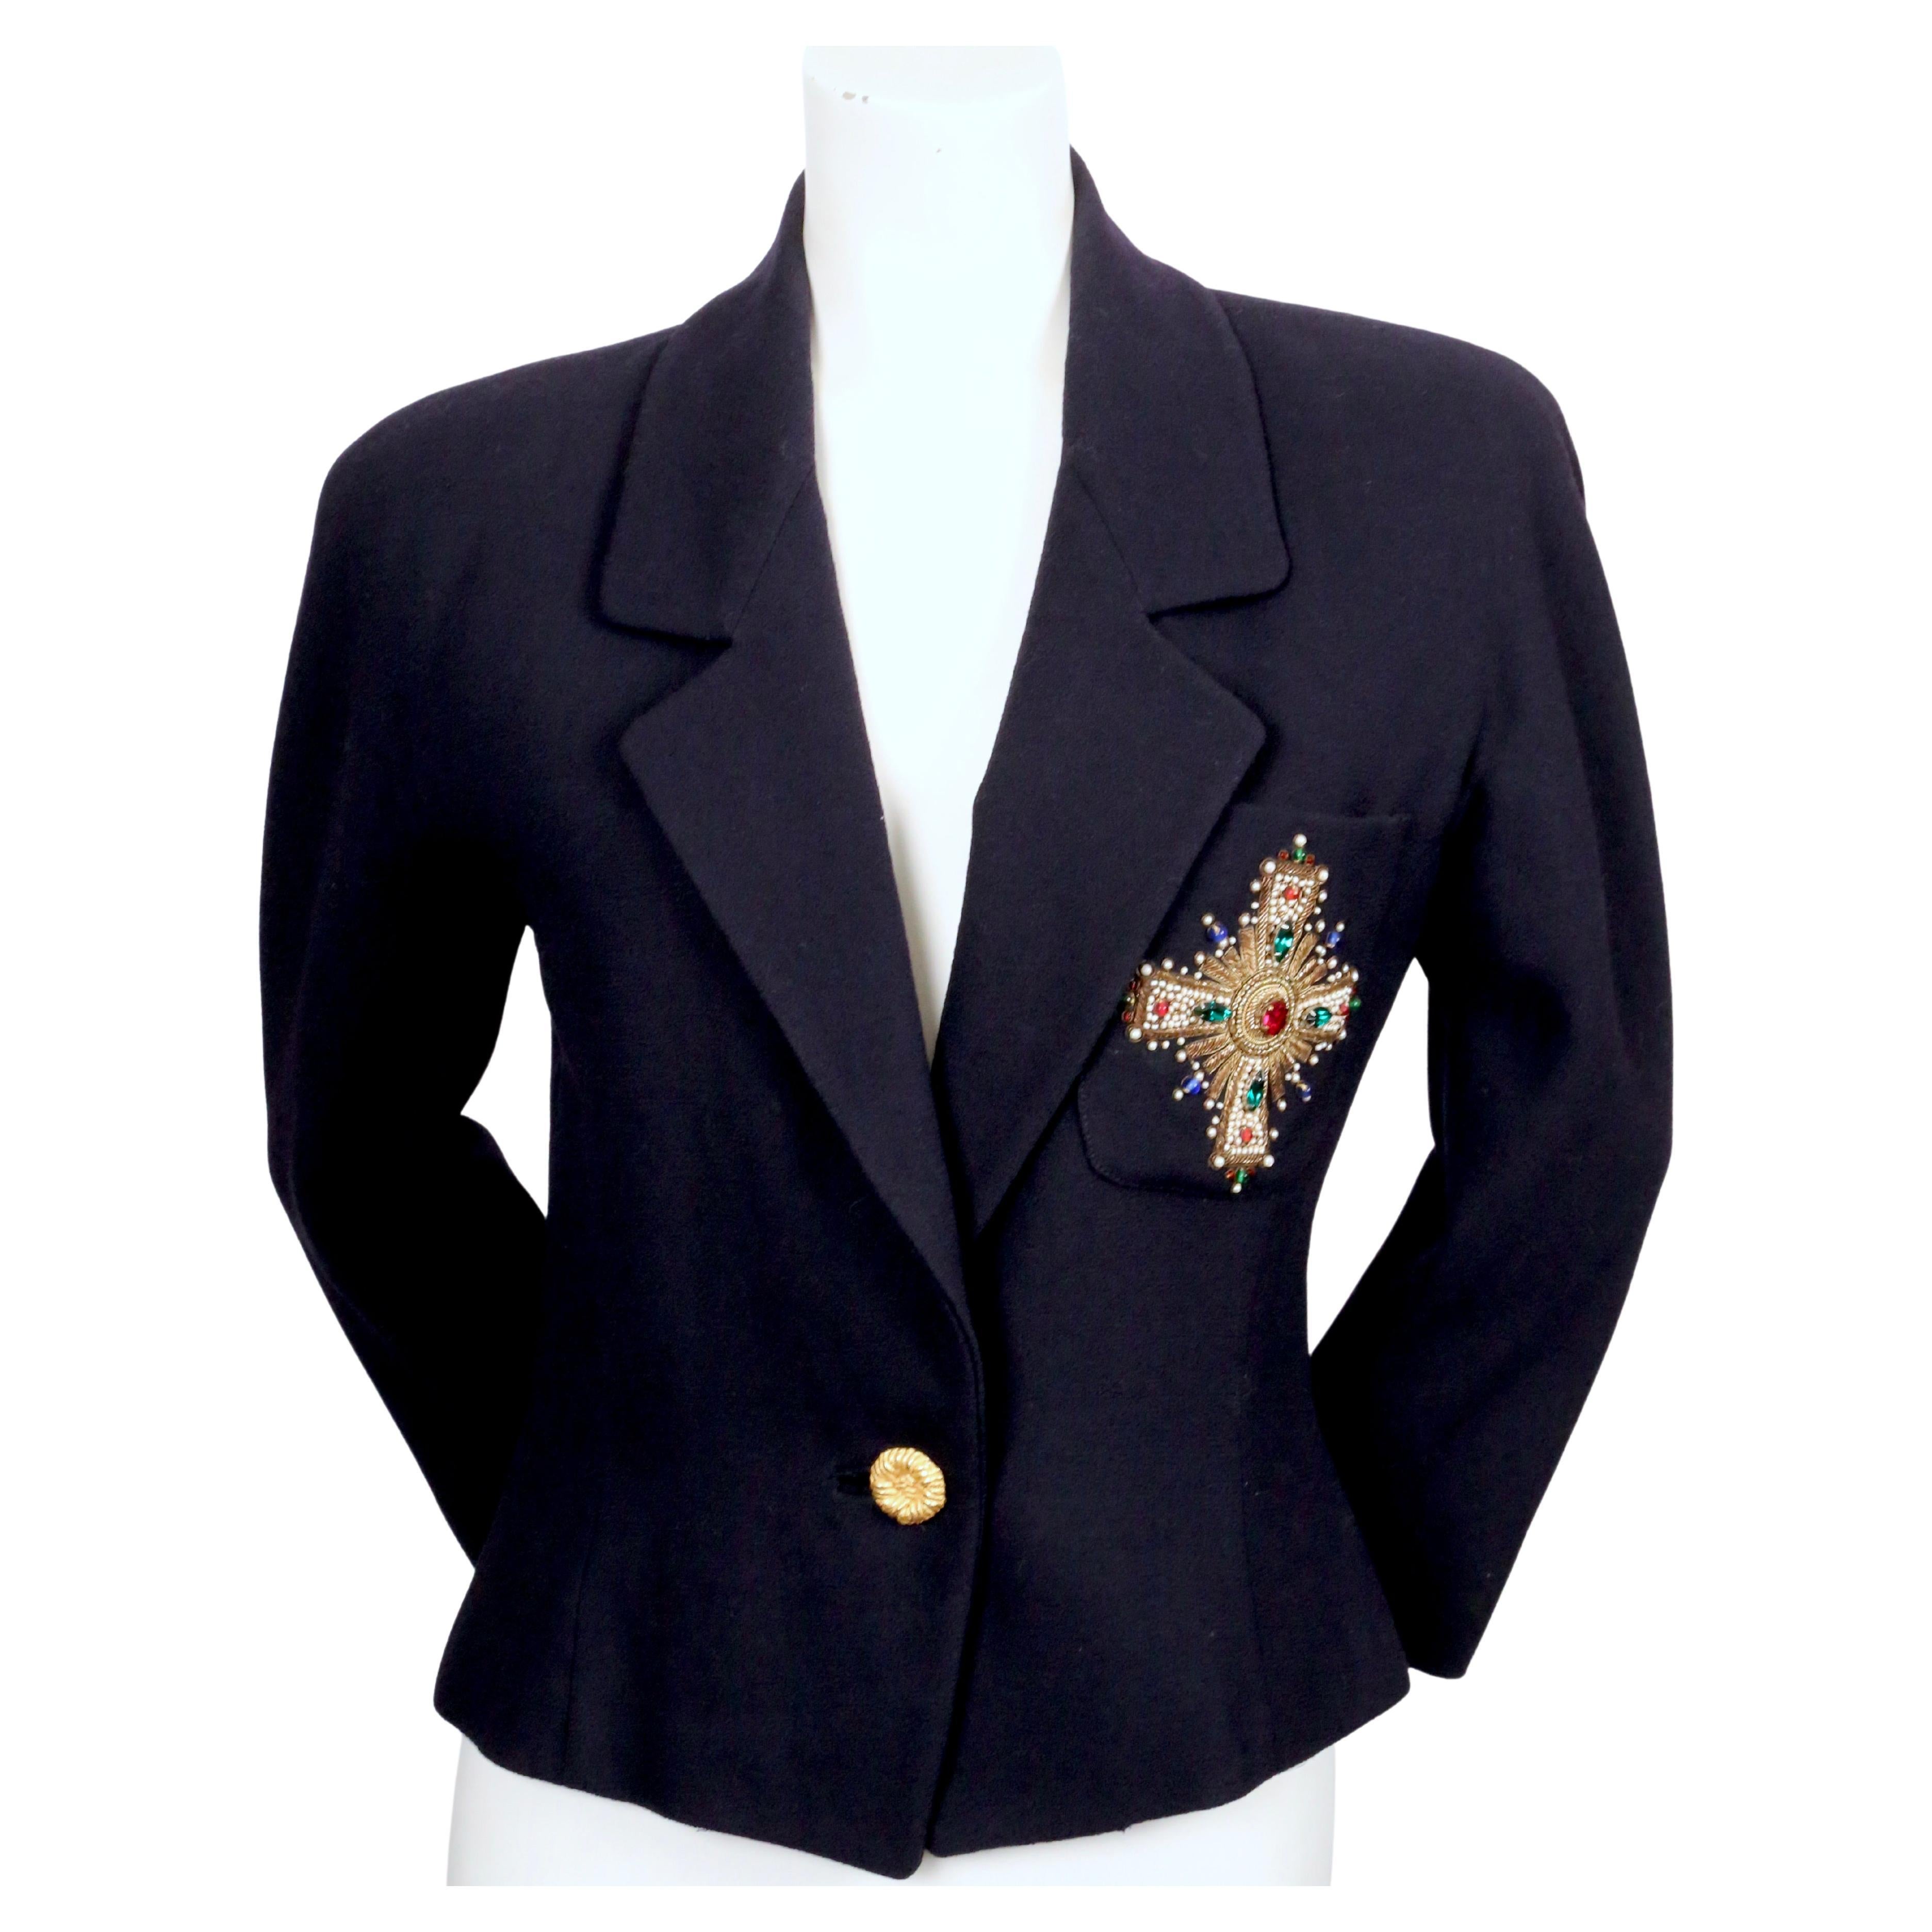 Veste en laine bleu marine foncé avec détail de croix de style byzantin bijoutier par Anne Klein datant de la fin des années 1980. Labellisée taille 4. Mesures approximatives : buste 36